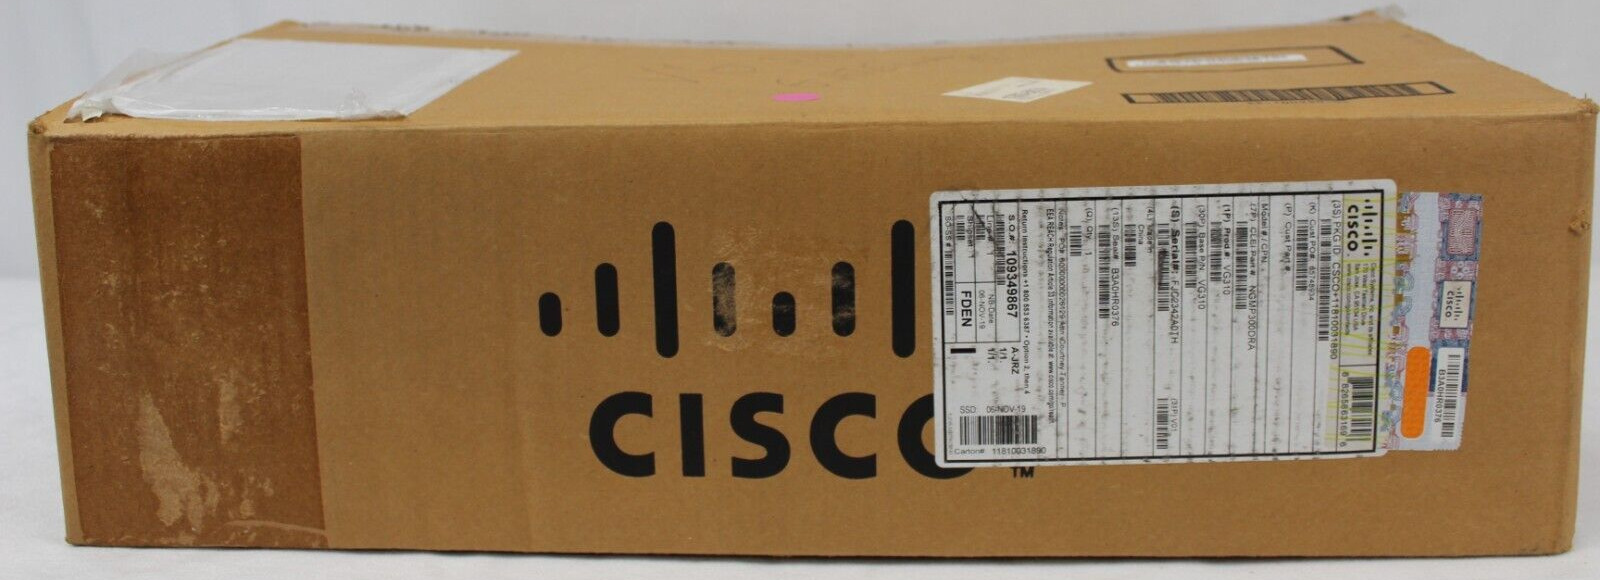 NEW Cisco VG310 Modular 24 FXS Port Voice Over IP Gateway